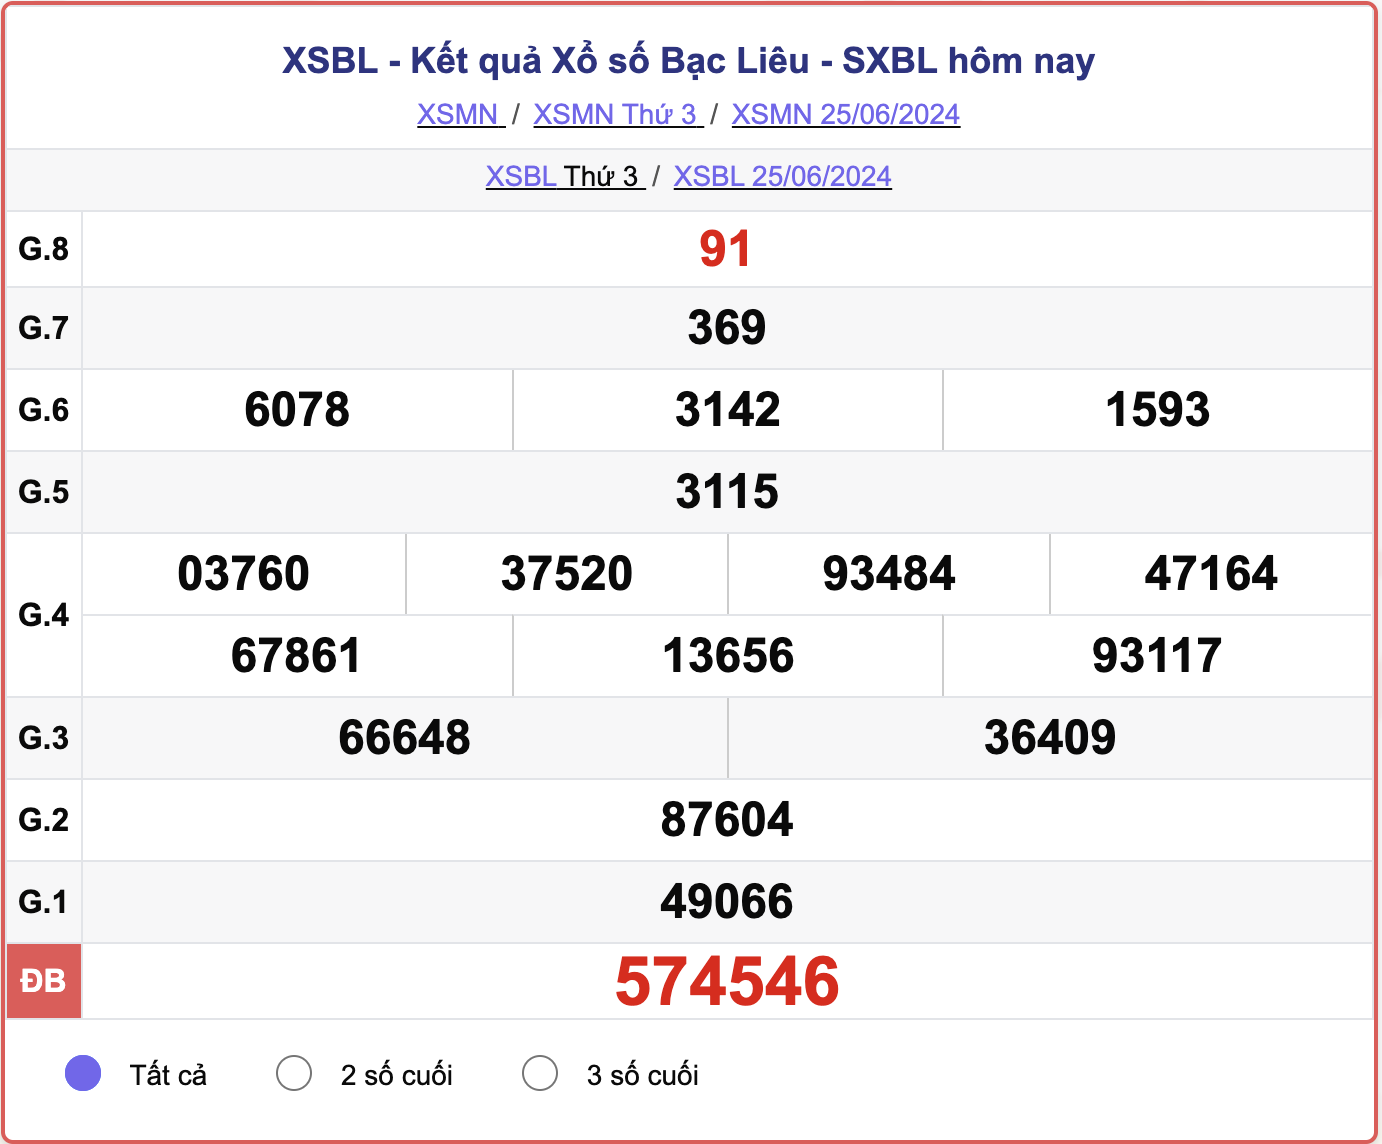 XSBL 25/6, kết quả xổ số Bạc Liêu hôm nay 25/6/2024.